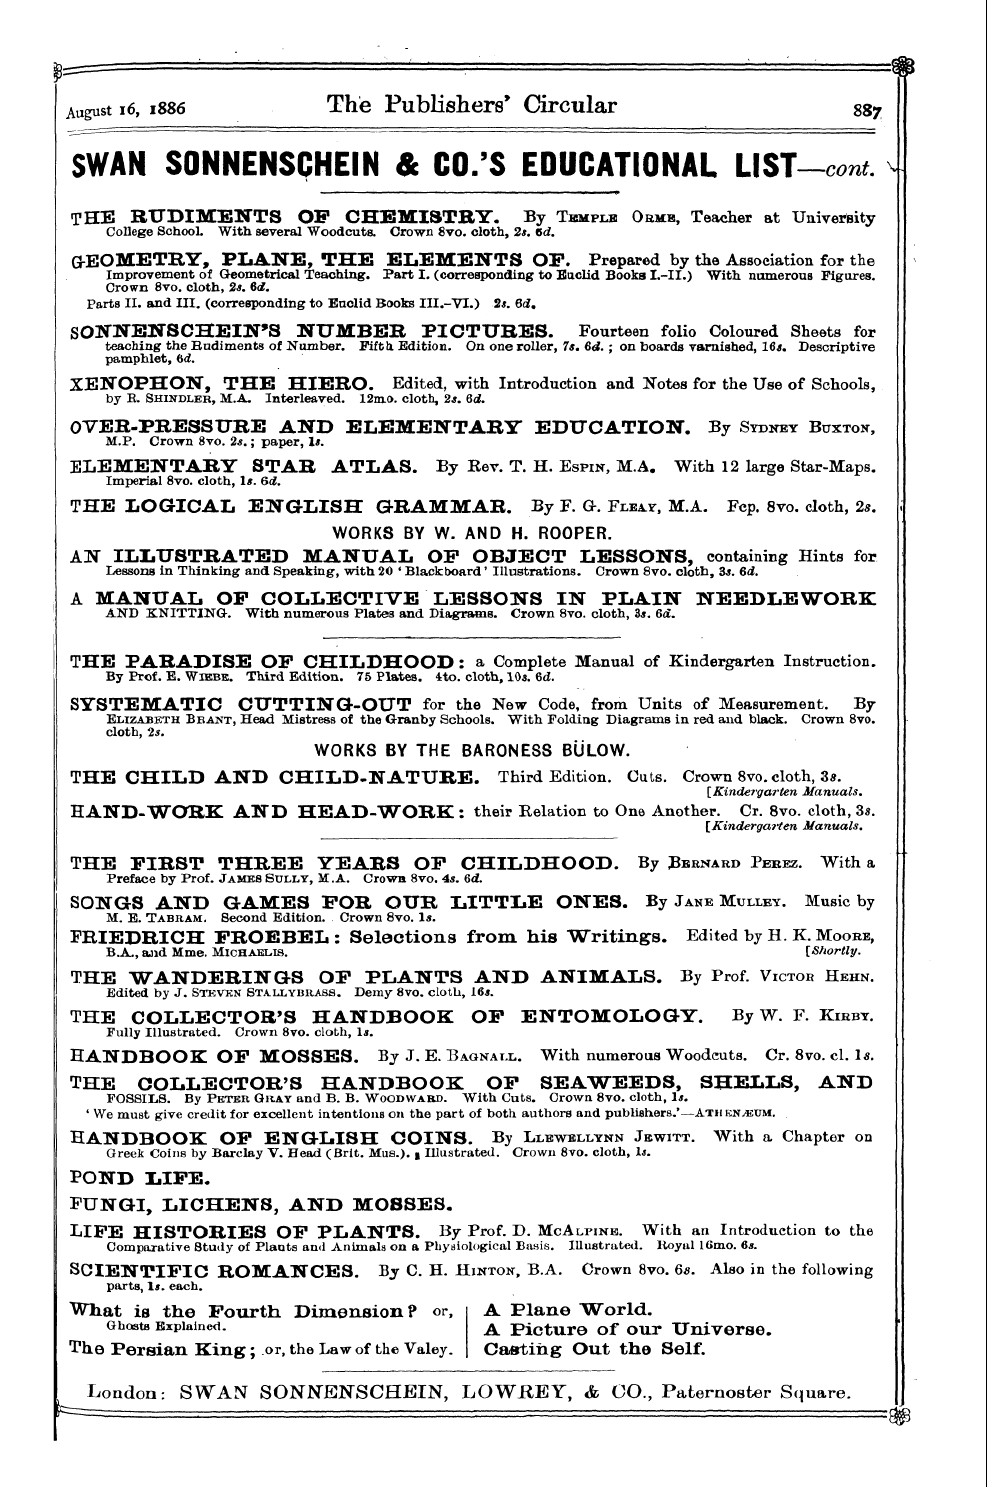 Publishers’ Circular (1880-1890): jS F Y, 1st edition - Ar02500